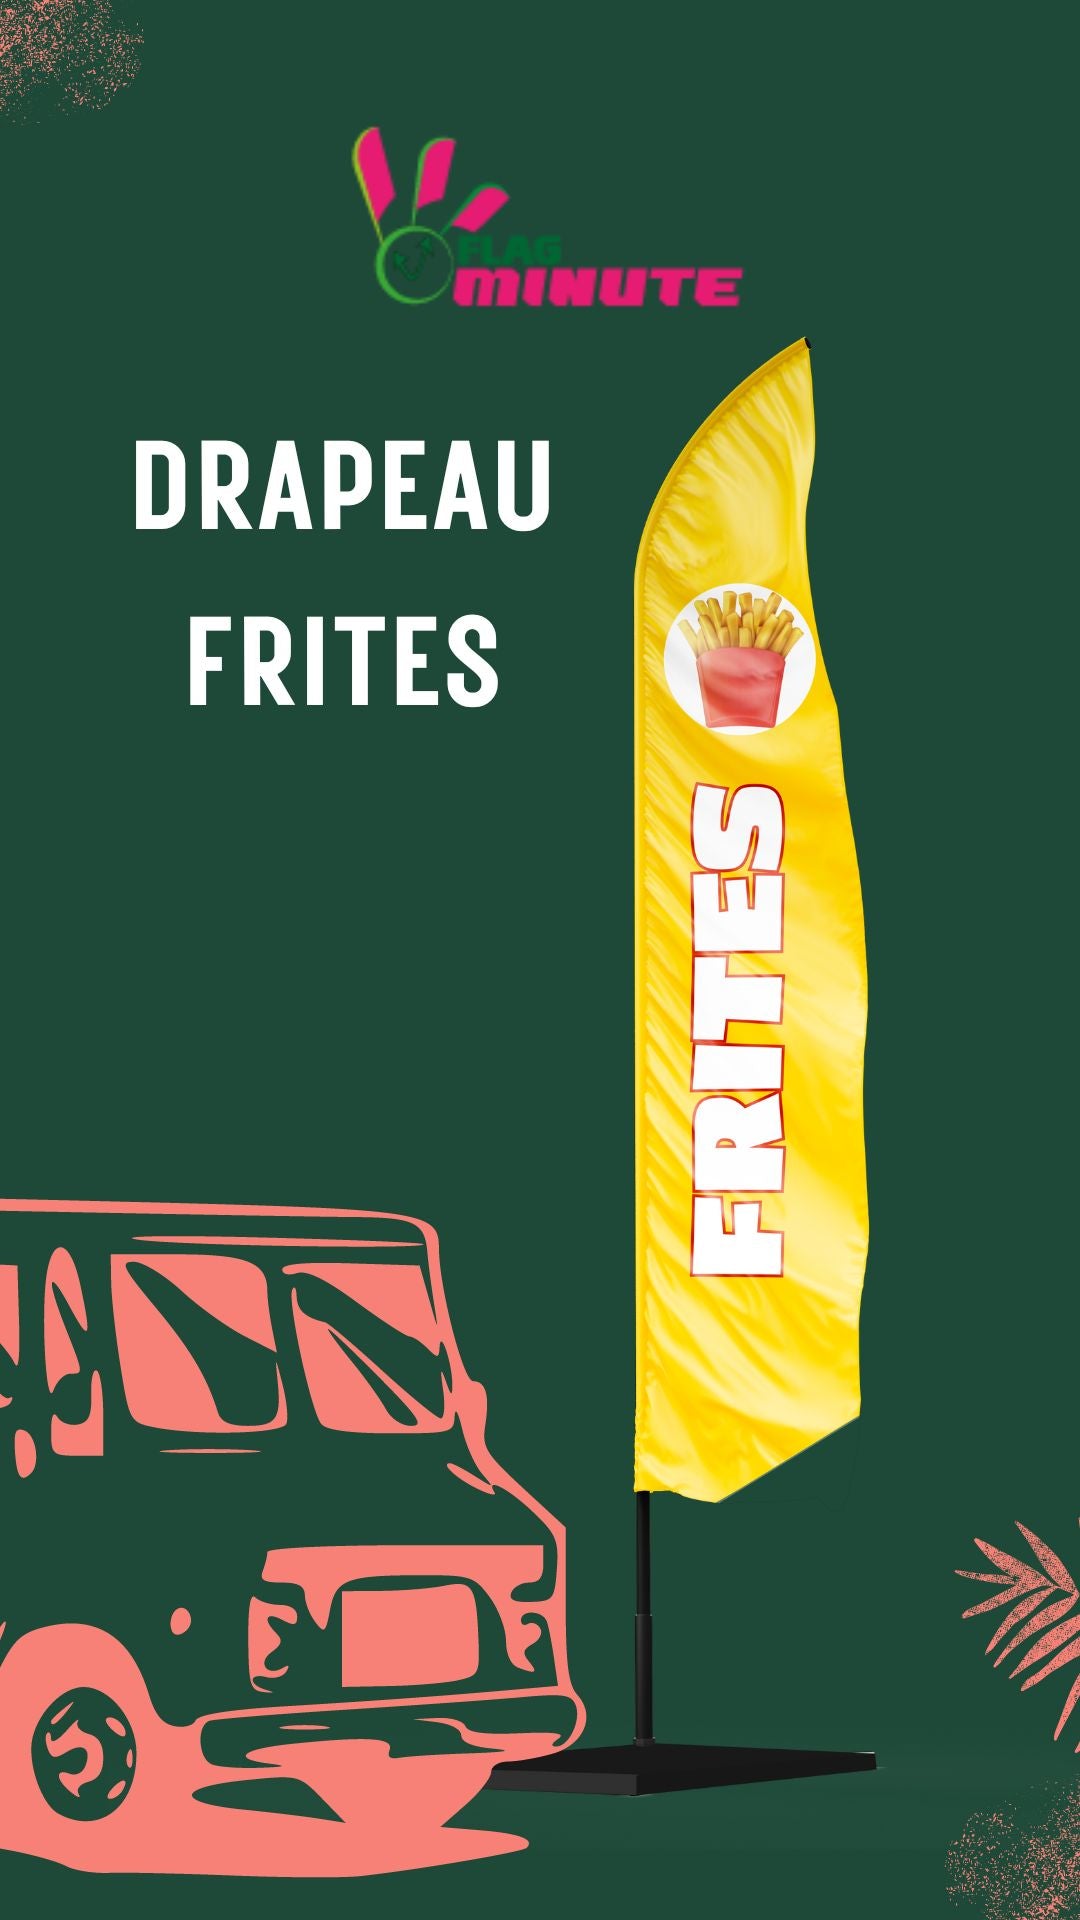 Drapeaux oriflamme publicitaire frites + mat + socle fonte